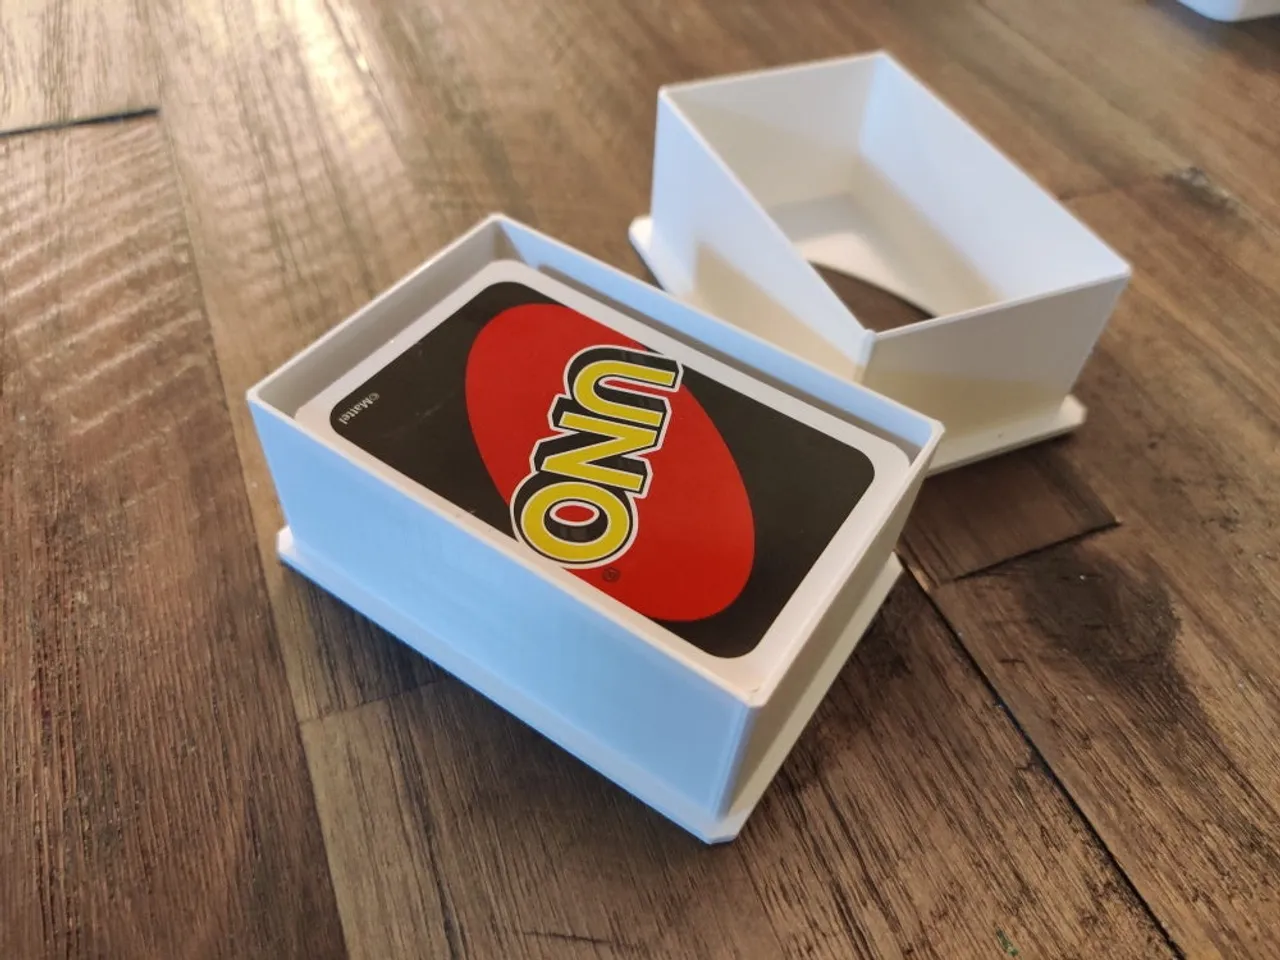 Uno Card box (Holder)